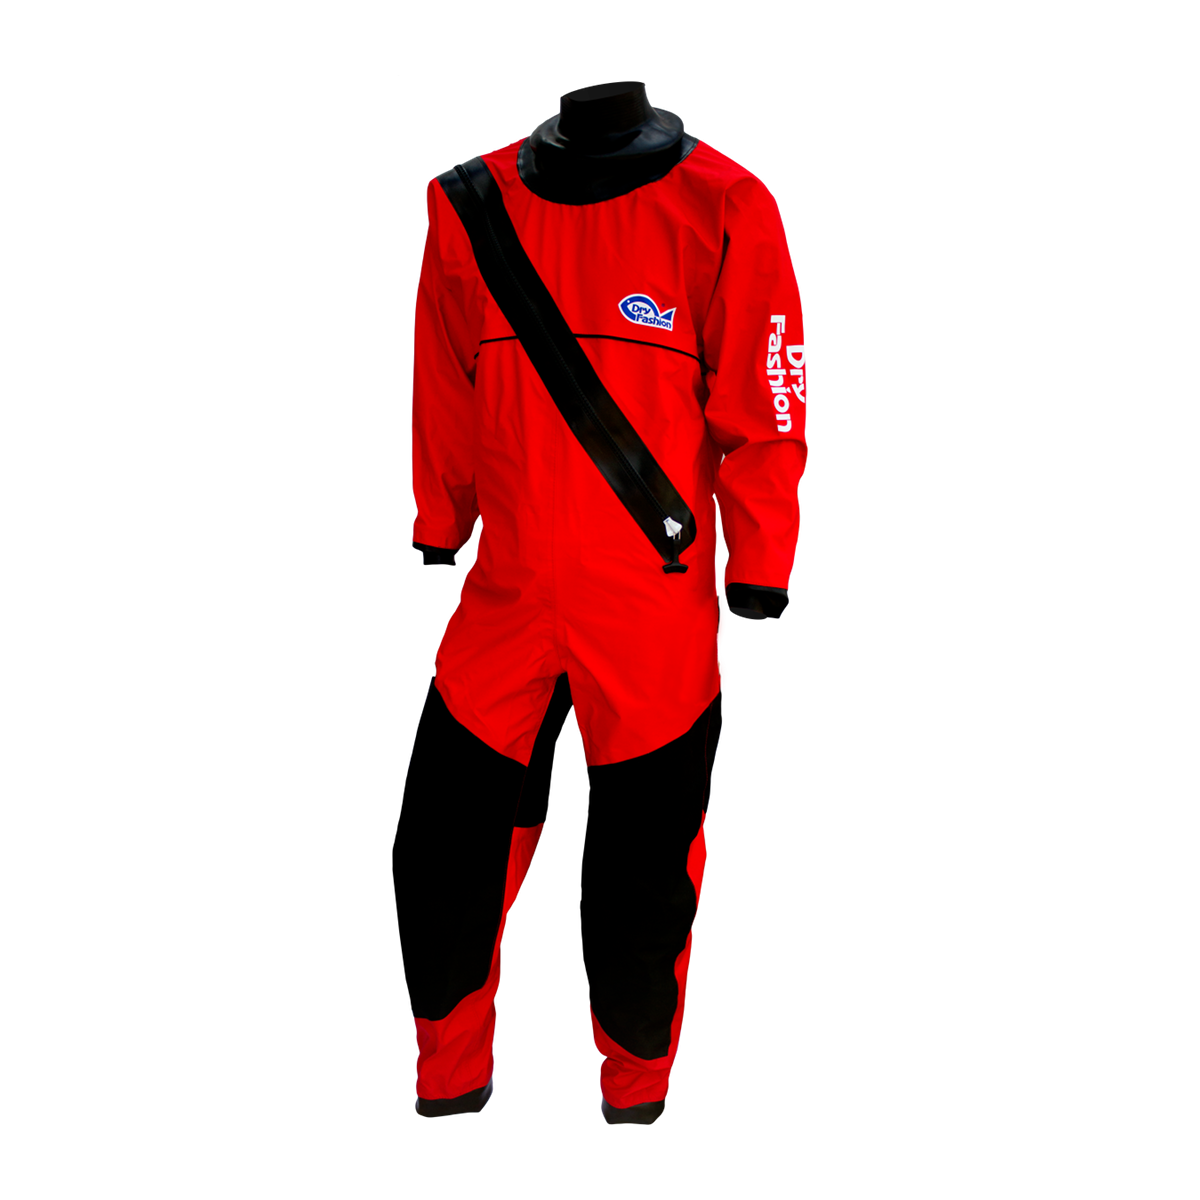 Dry Fashion Profi-Sailing Regatta combinaison étanche respirante unisexe rouge, taille M